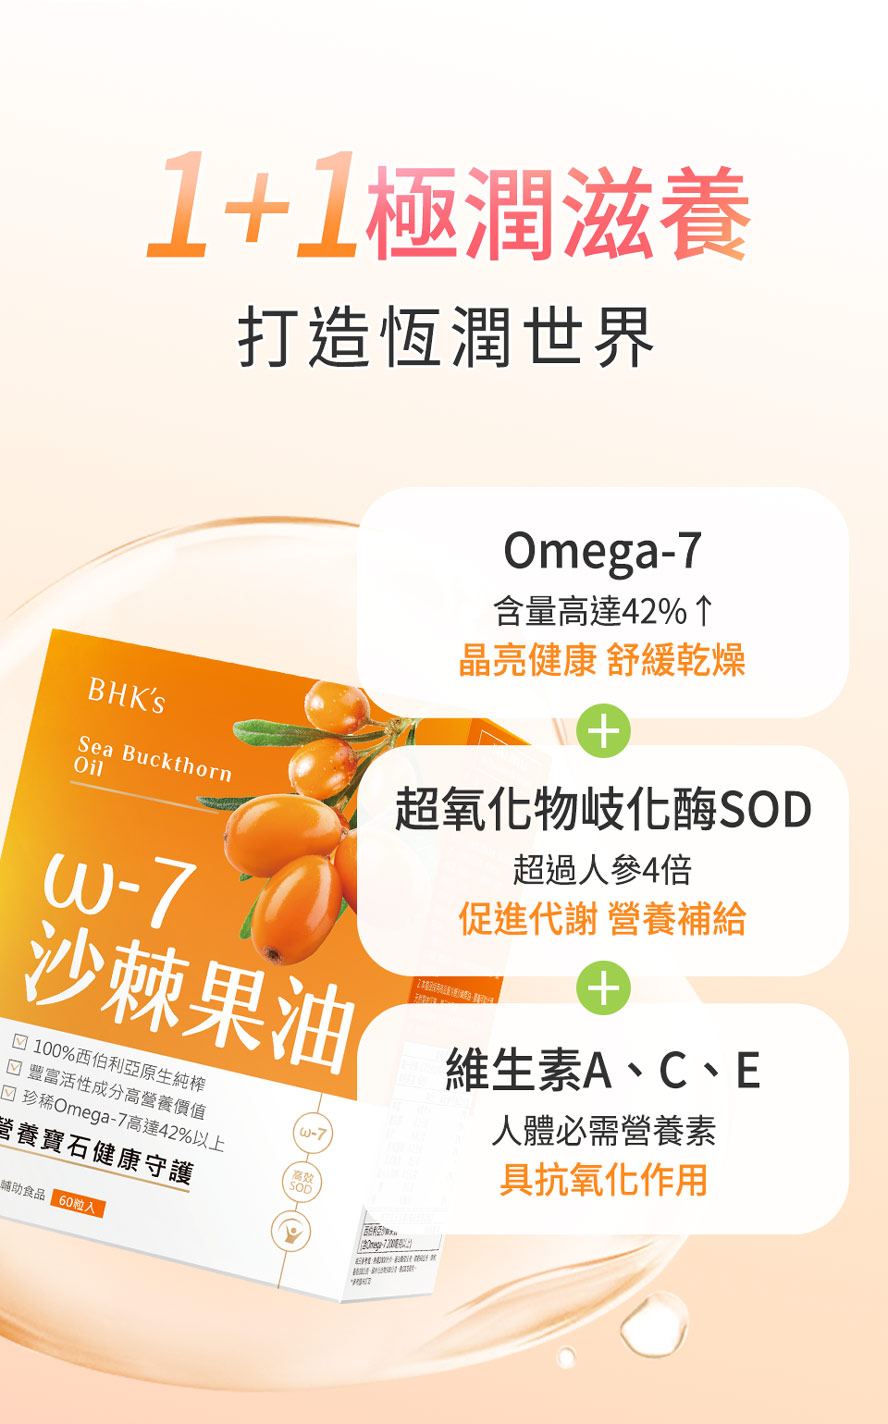 沙棘果油Omega-7有助舒緩乾燥與晶亮疲累感。